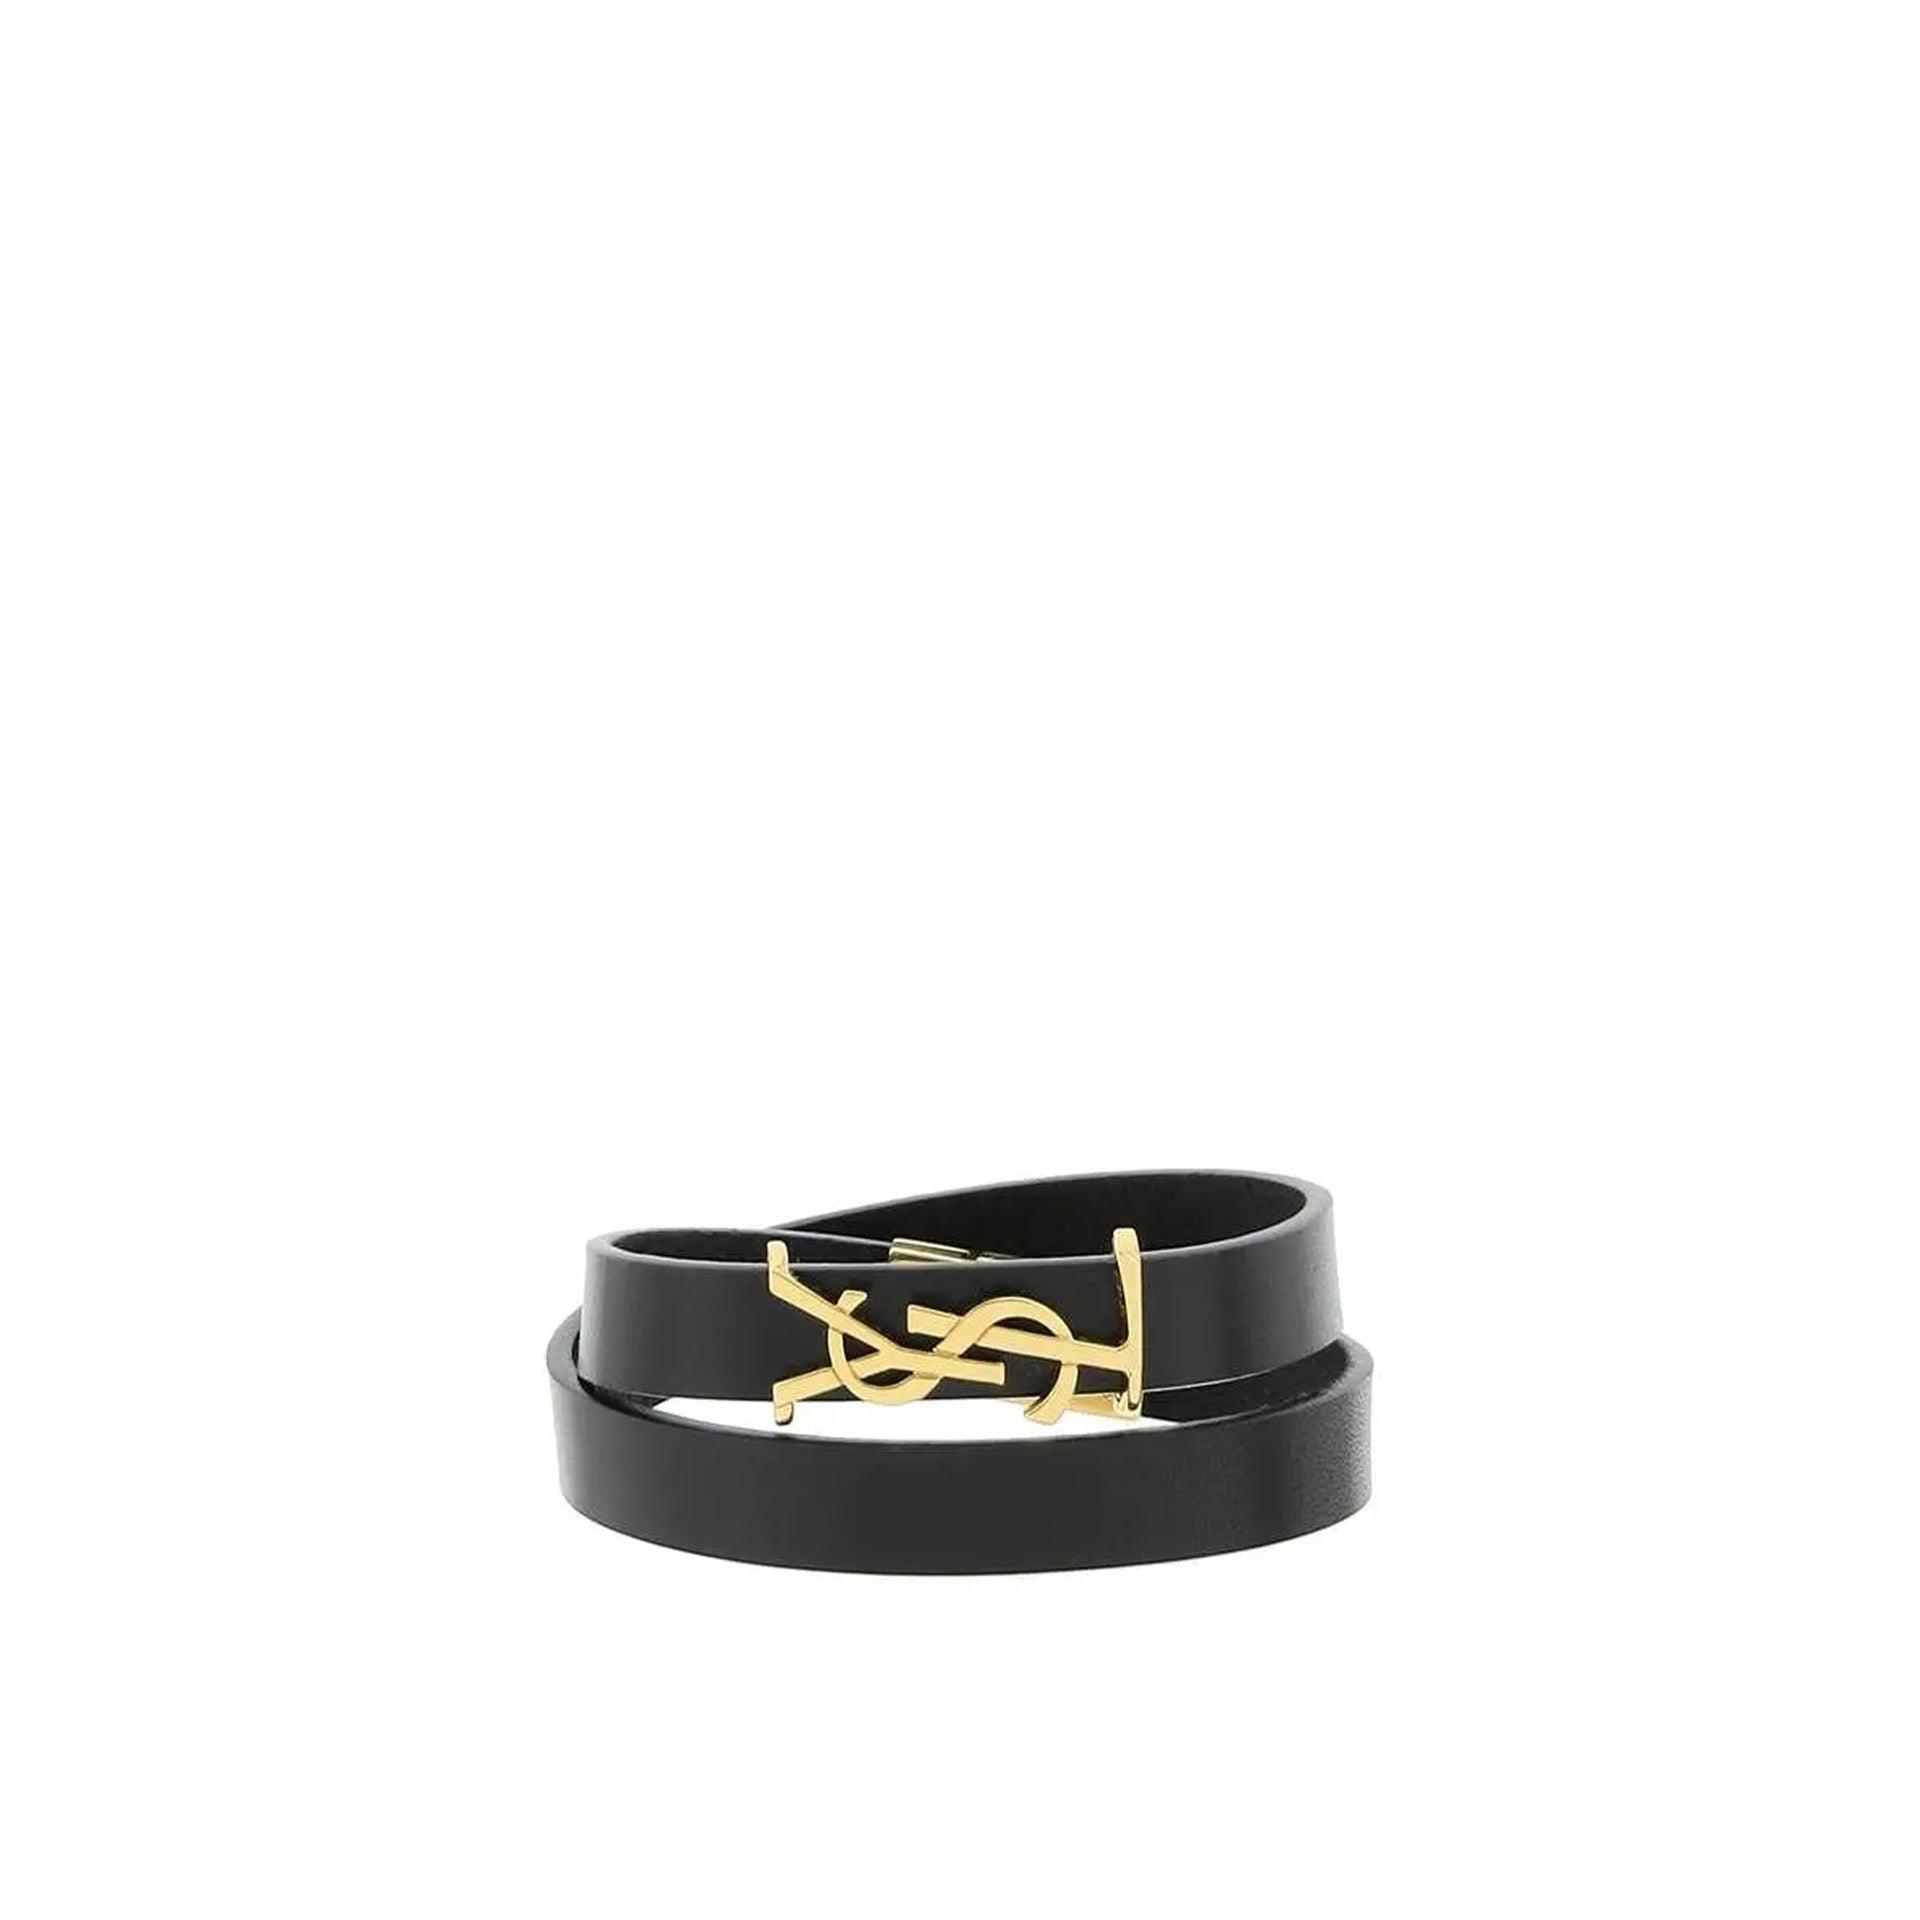 YSL logo-plaque leather bracelet, Saint Laurent